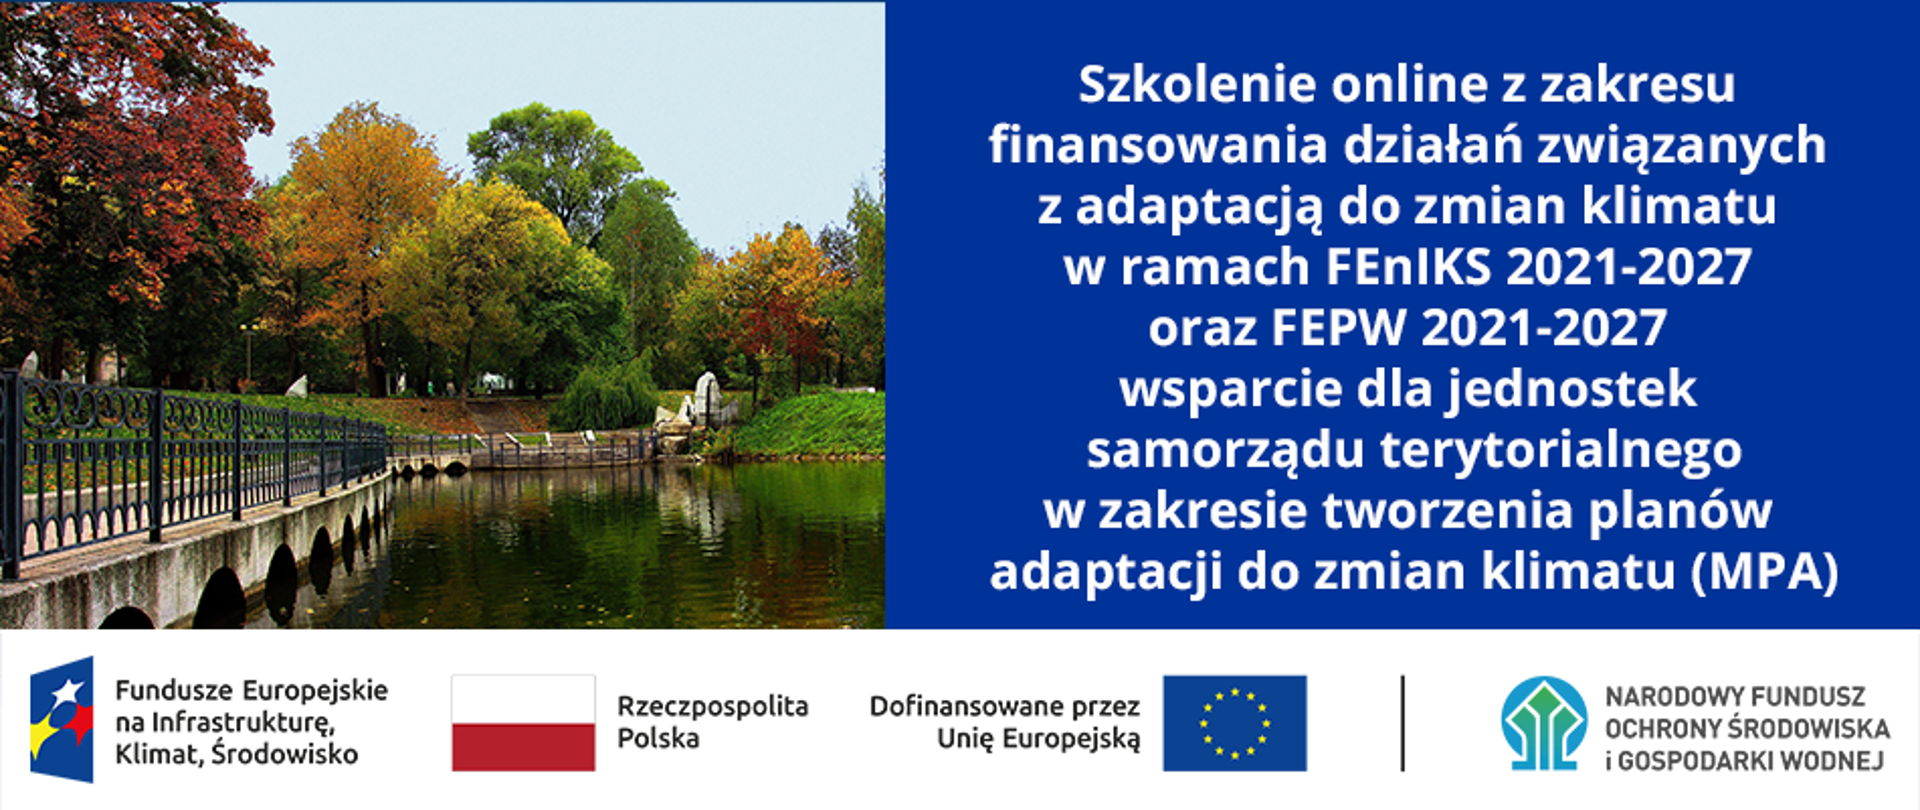 Po lewej stronie zdjęcie parku, po prawej napis: "Szkolenie online z zakresu
finansowania działań związanych z adaptacją do zmian klimatu w ramach FEnIKS 2021-2027 oraz FEPW 2021-2027 wsparcie dla jednostek samorządu terytorialnego w zakresie tworzenia planów adaptacji do zmian klimatu (MPA)", a na dole ciąg znaków: FEnIKS, RP, UE i NFOŚiGW.
